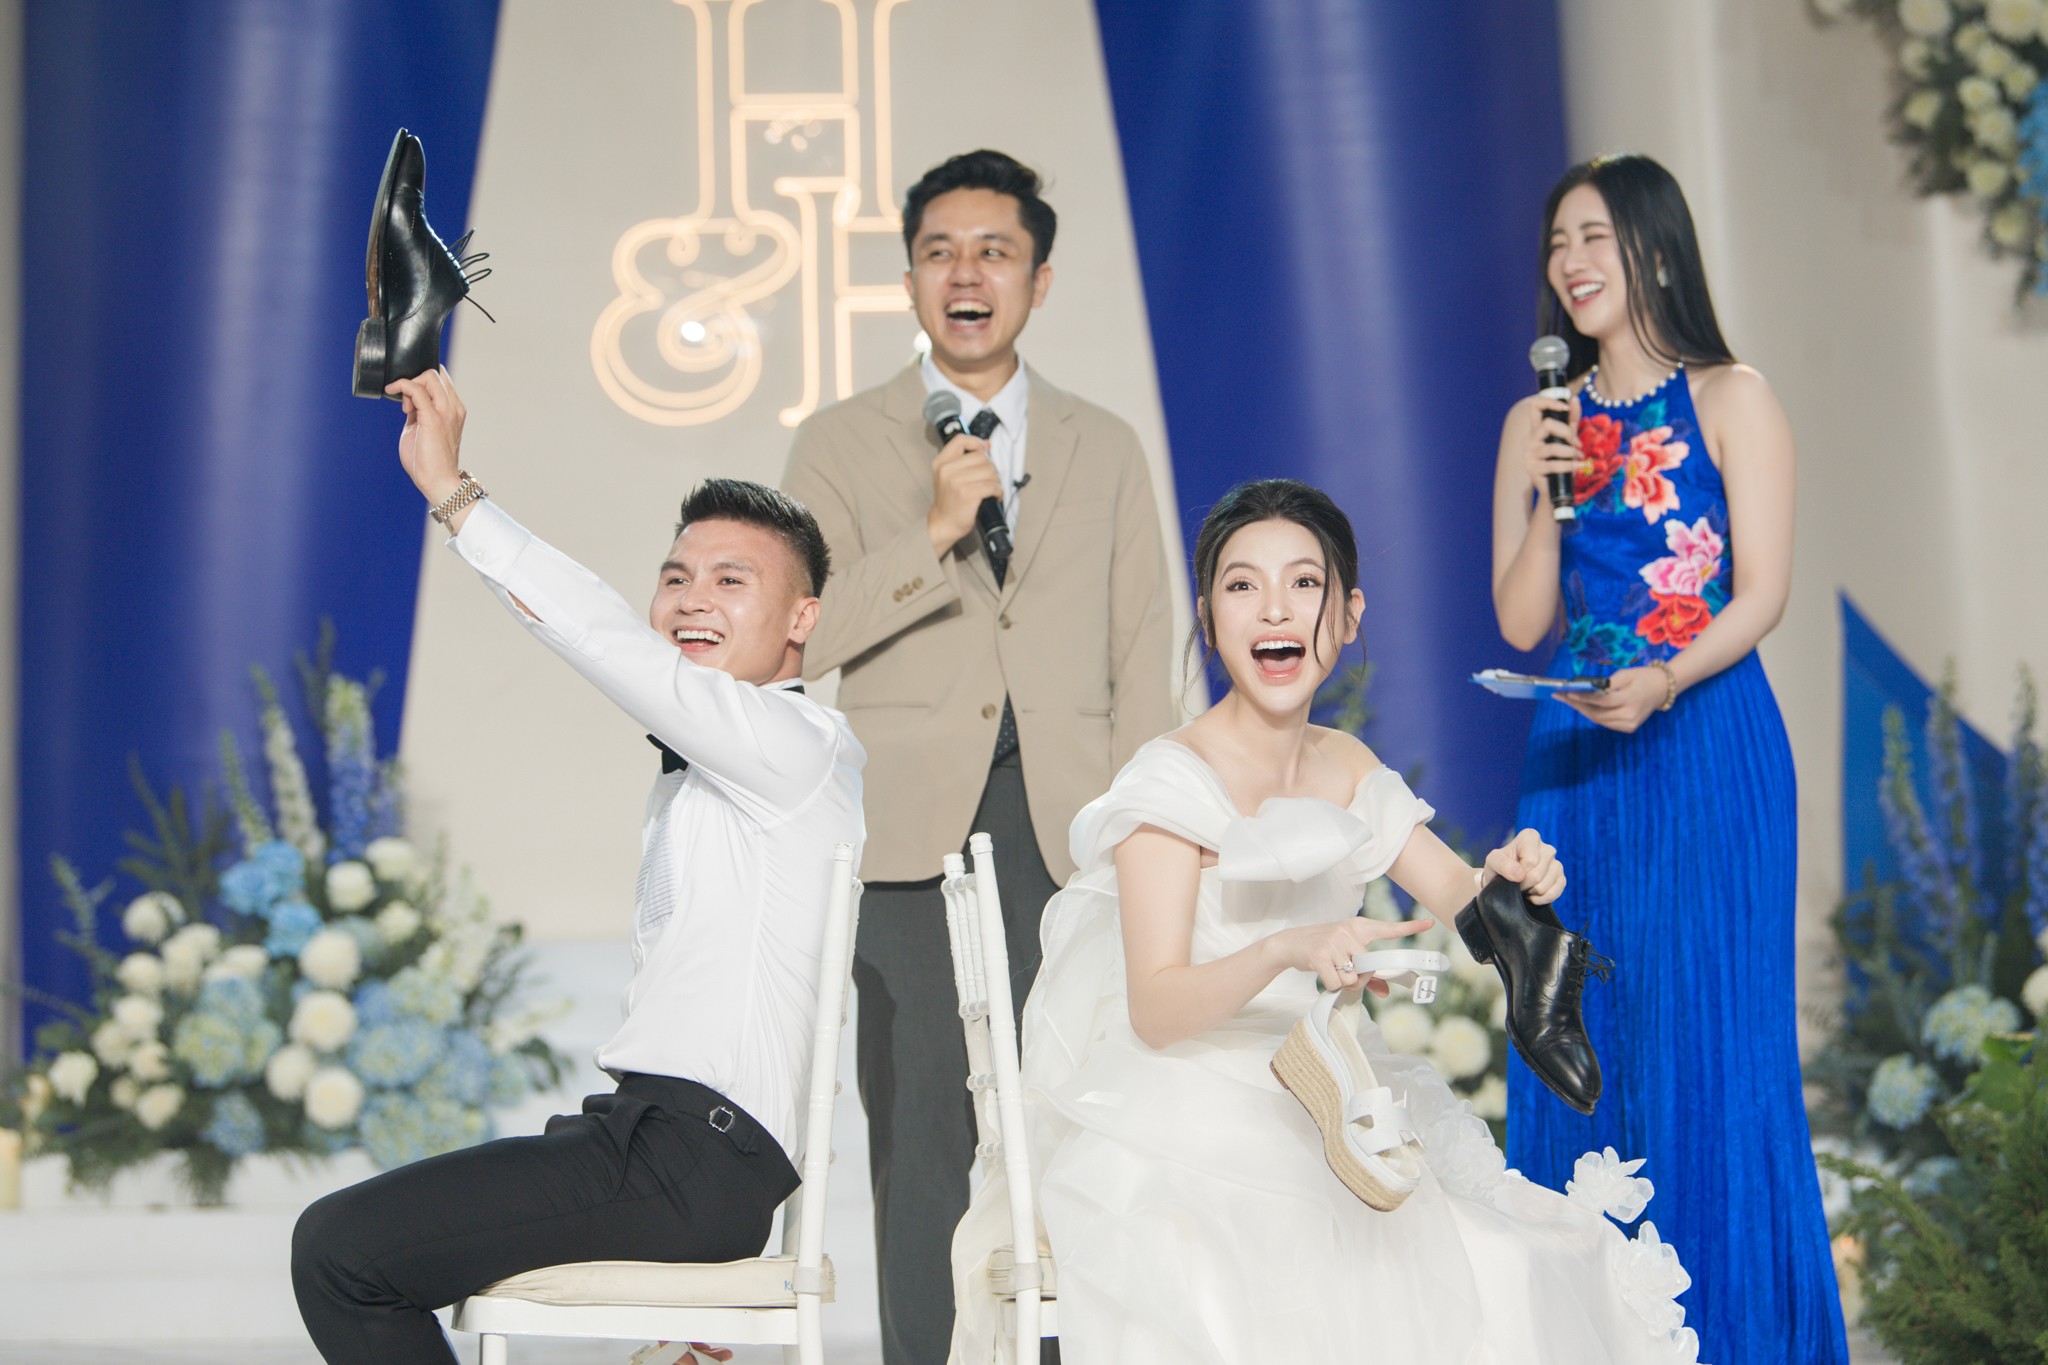 Chú rể Quang Hải và cô dâu Chu Thanh Huyền bất ngờ, ngỡ ngàng với đối phương trong trò chơi tại tiệc cưới